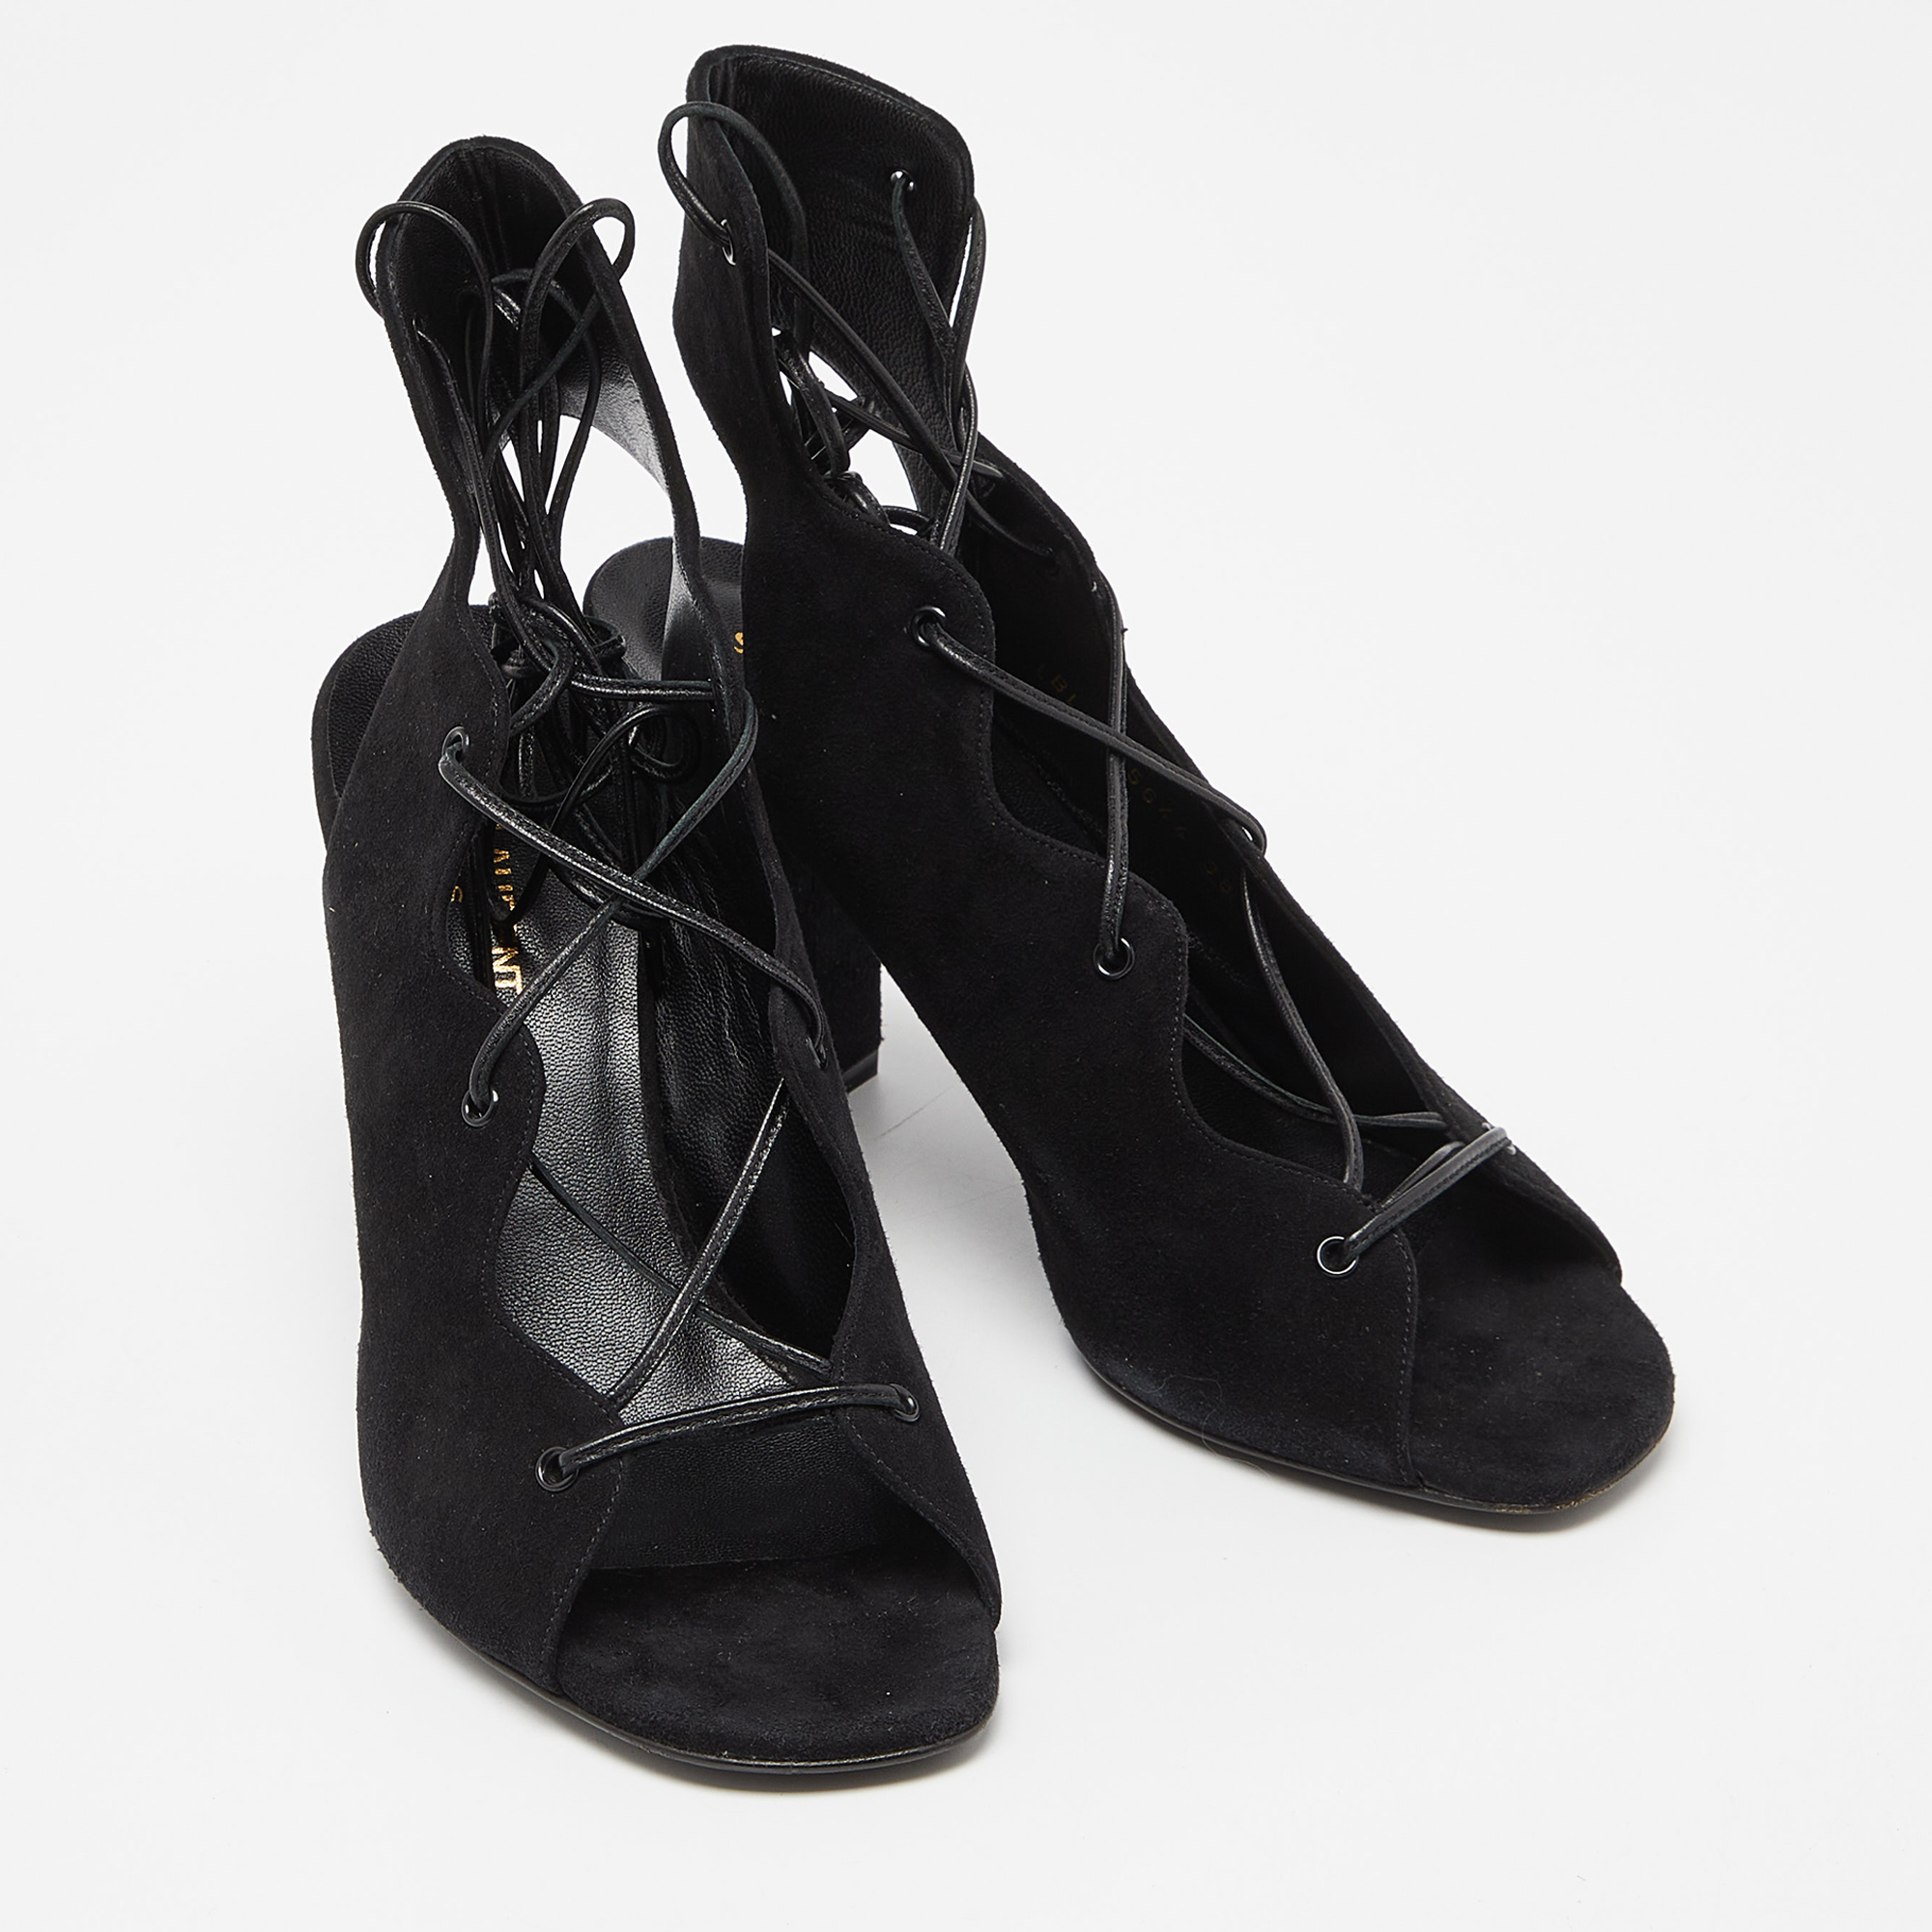 Saint Laurent Black Suede Lace Up Block Heel Sandals Size 38